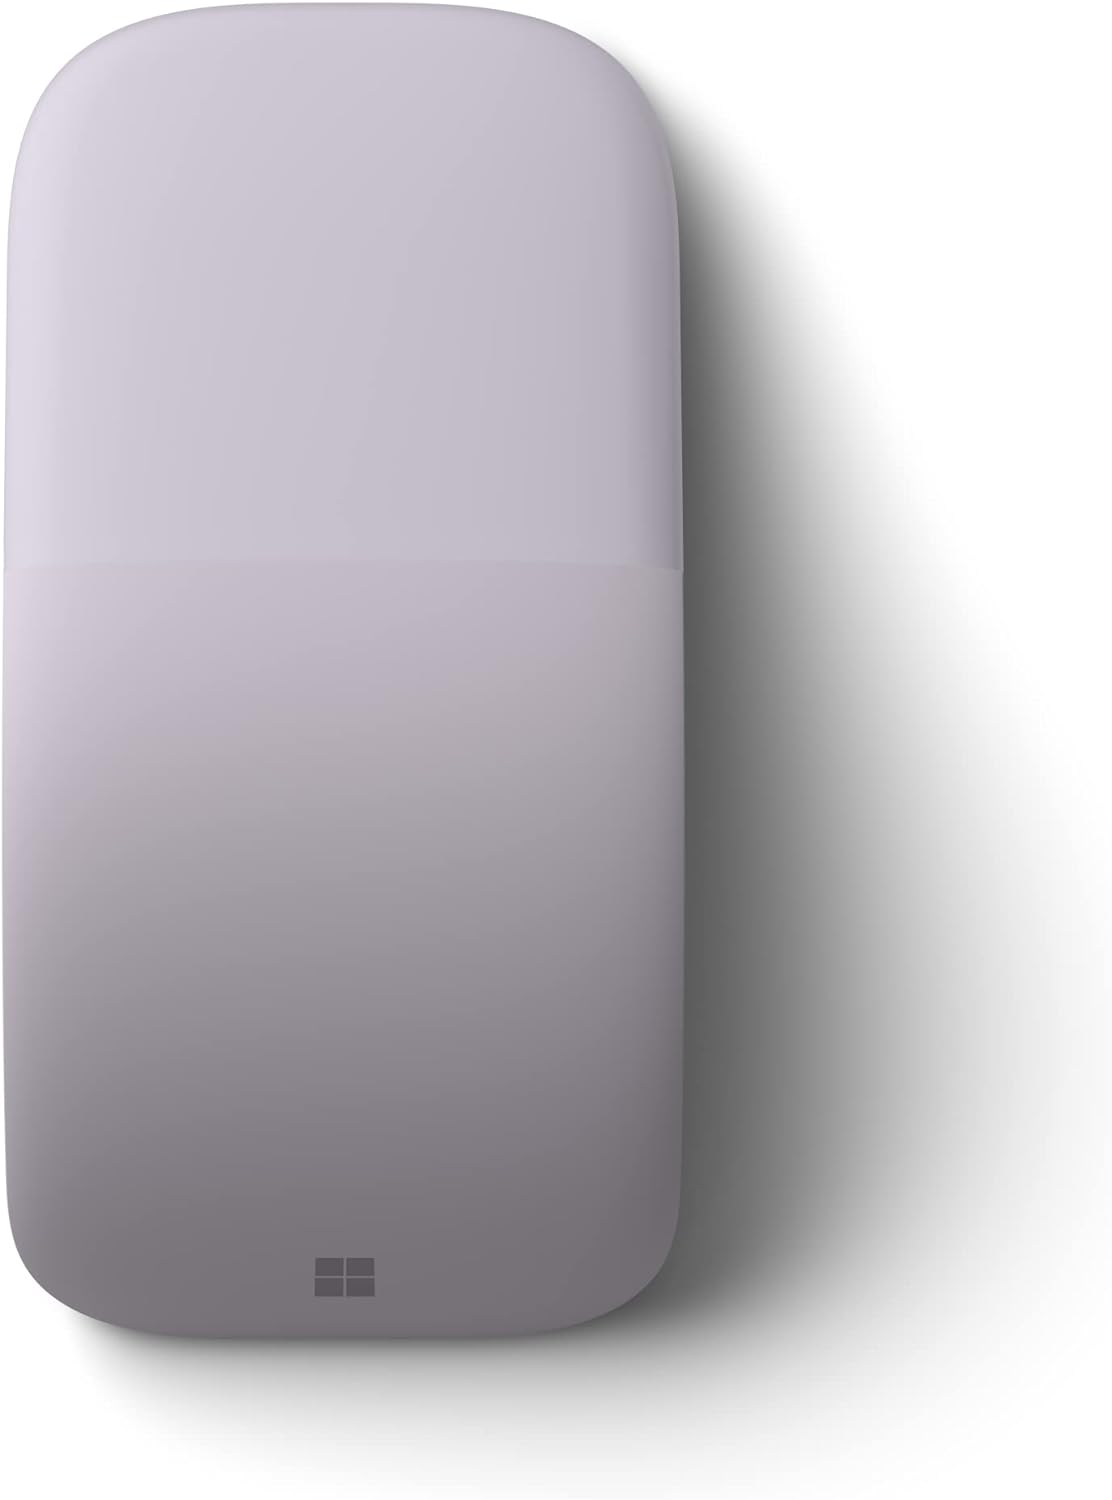 Microsoft Surface Arc Maus (ELG-00025) - Flieder - optisch, 2 Tasten, kabellos, Bluetooth 4.0 